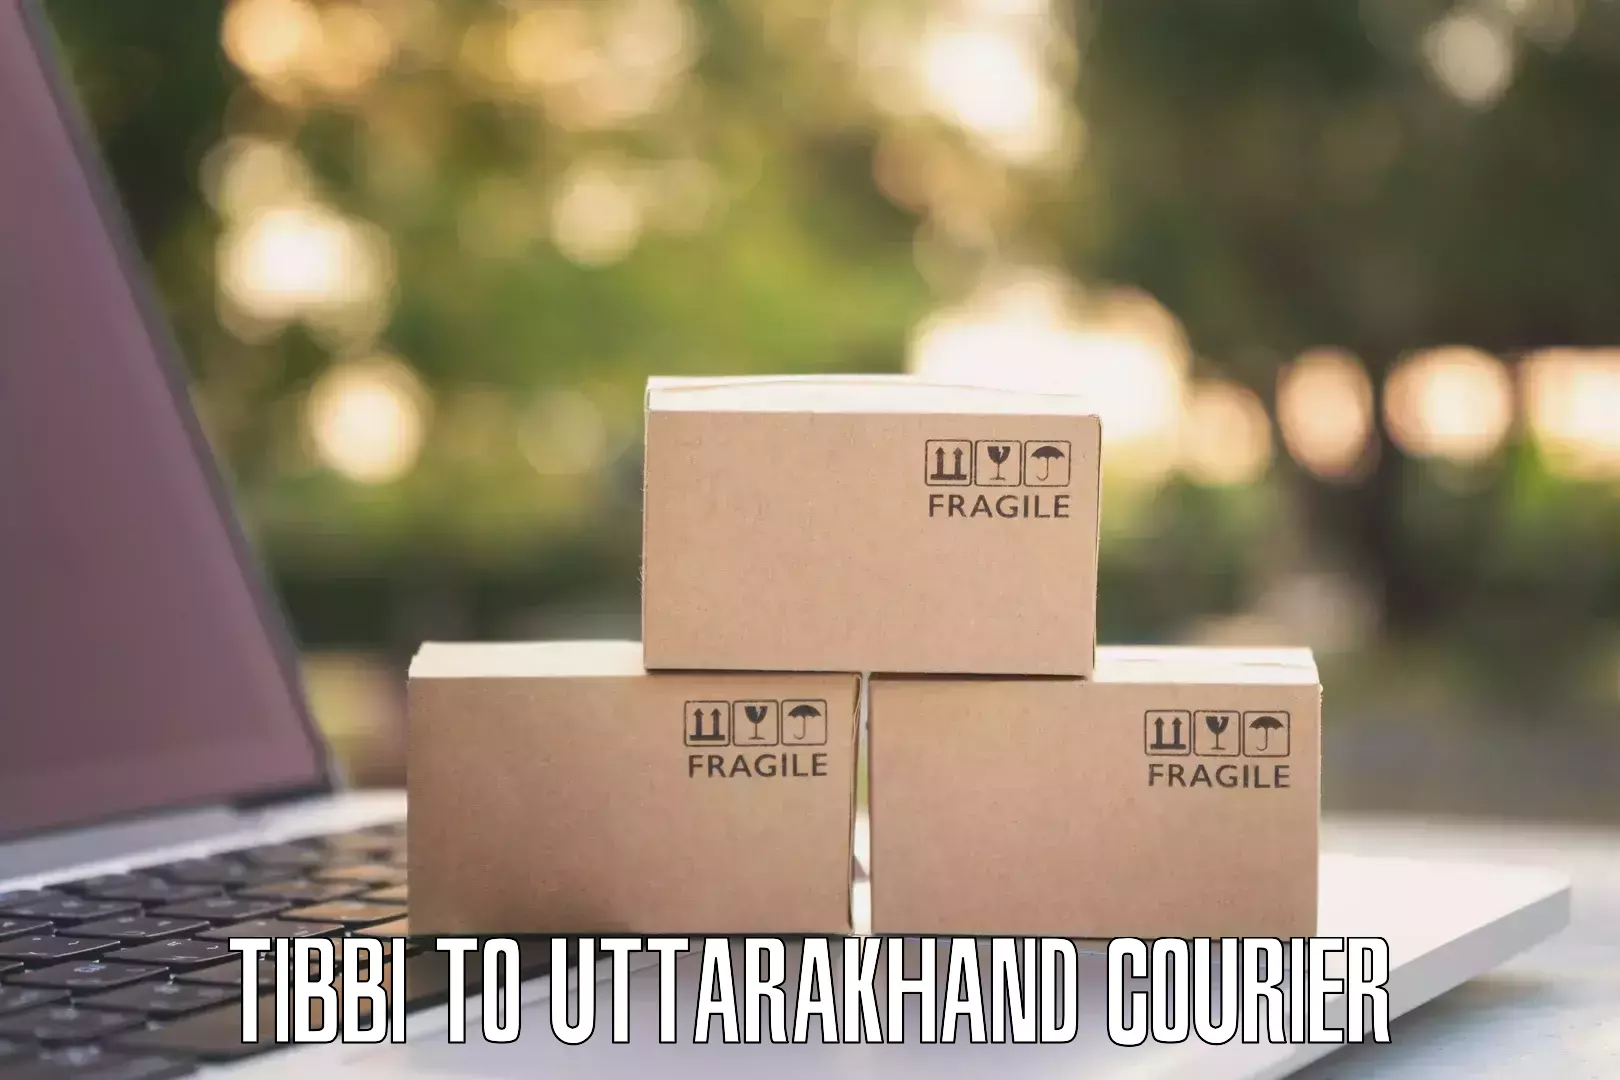 Easy return solutions Tibbi to Uttarakhand